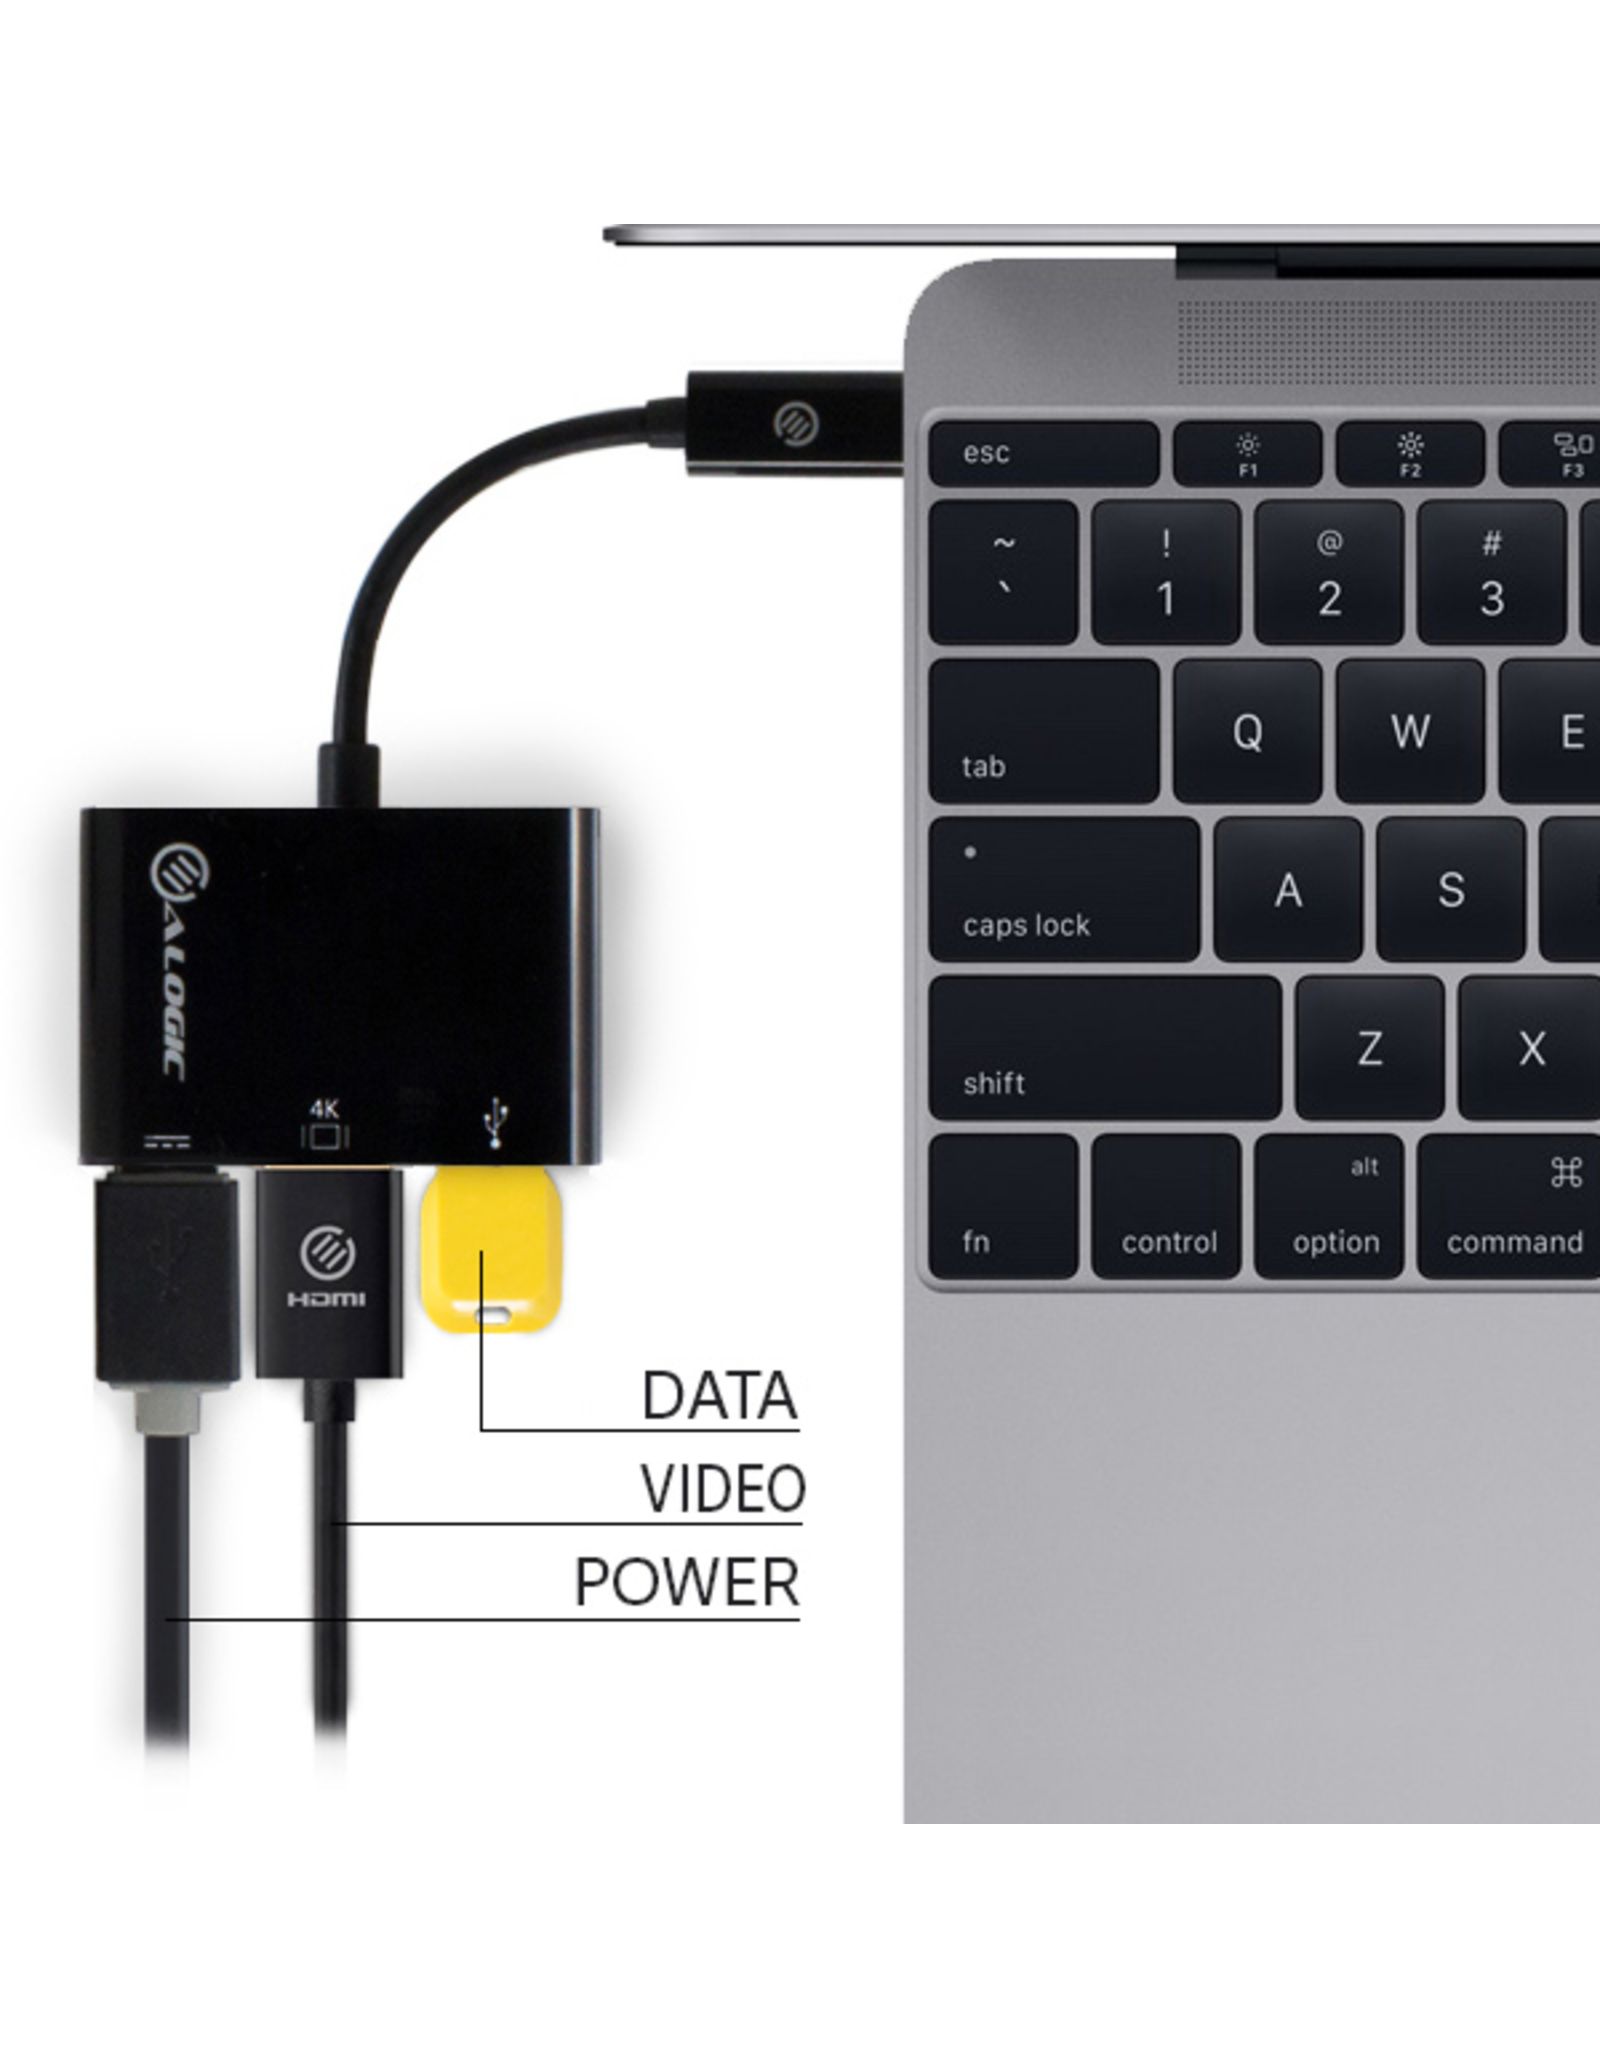 ALOGIC ALOGIC 15cm USB-C to HDMI/USB 3.0/USB-C with charging 60W (20V/3A) - Black